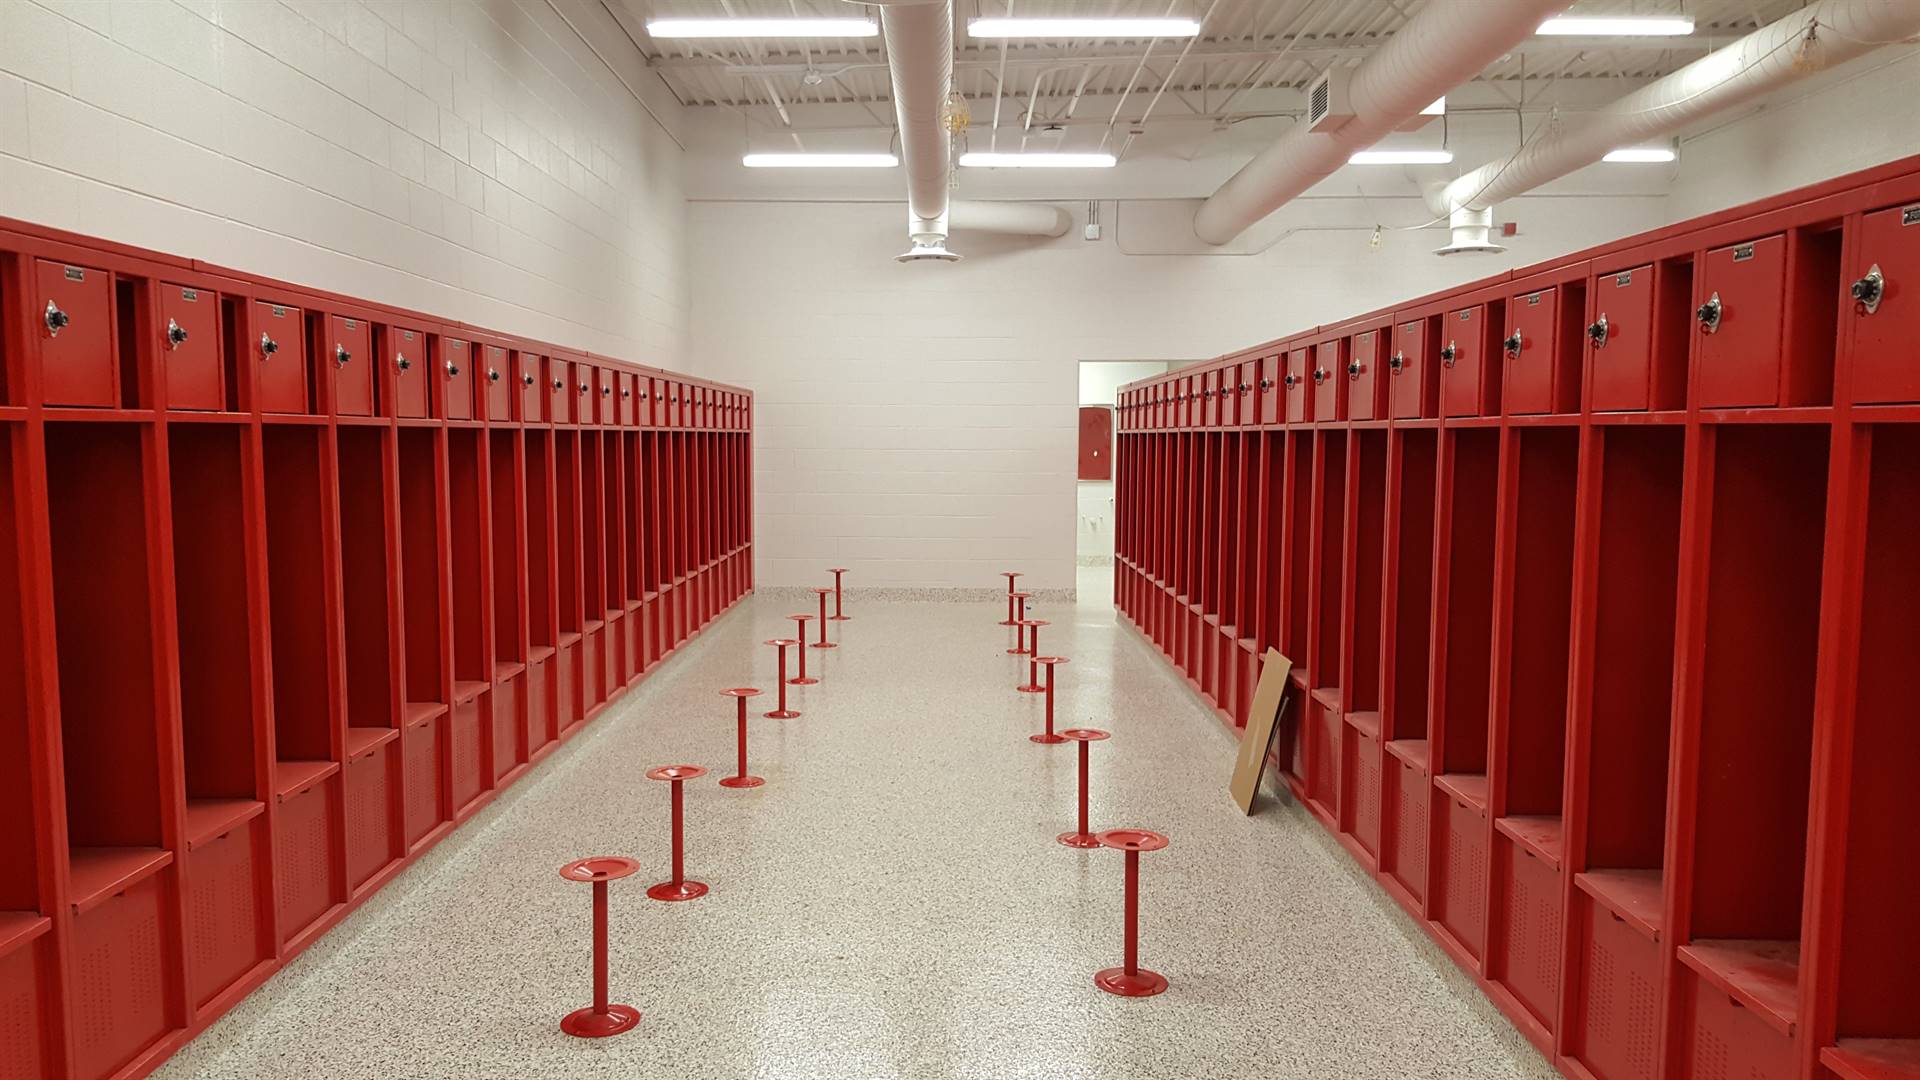 Boys' locker room